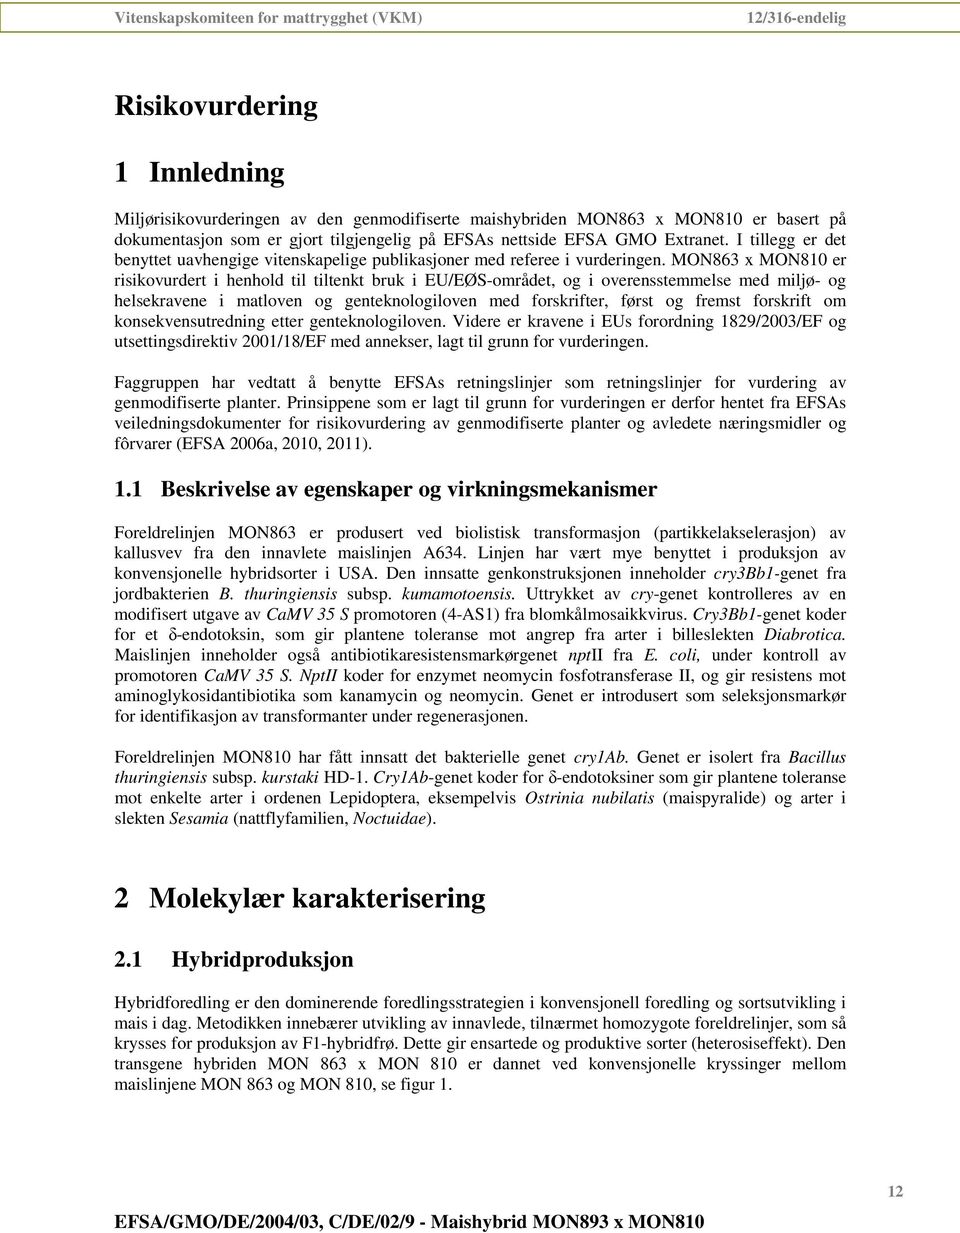 MON863 x MON810 er risikovurdert i henhold til tiltenkt bruk i EU/EØS-området, og i overensstemmelse med miljø- og helsekravene i matloven og genteknologiloven med forskrifter, først og fremst